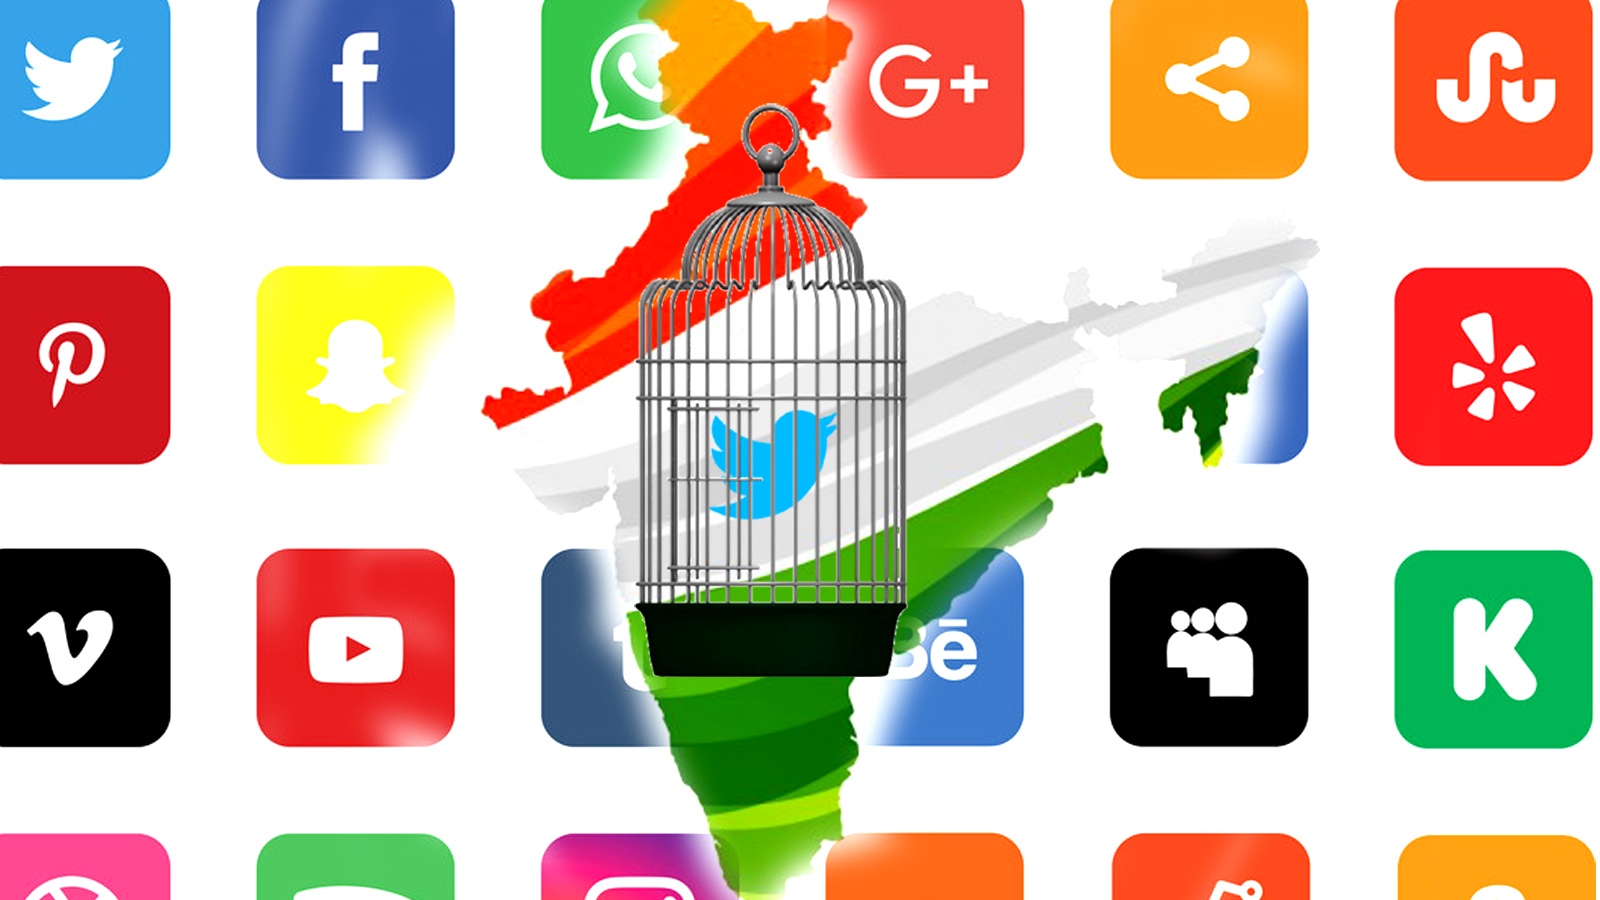 नवीन आईटी नियम की अवहेलना के आधार पर अमेरिकन माइक्रो ब्लॉगिंग एंड सोशल नेटवर्किंग सर्विस ट्विटर (Twitter) पर भारत में कार्रवाई हुई है. कार्रवाई के बाद अब ट्विटर ने भारत में कानूनी सुरक्षा का आधार गंवा दिया है.